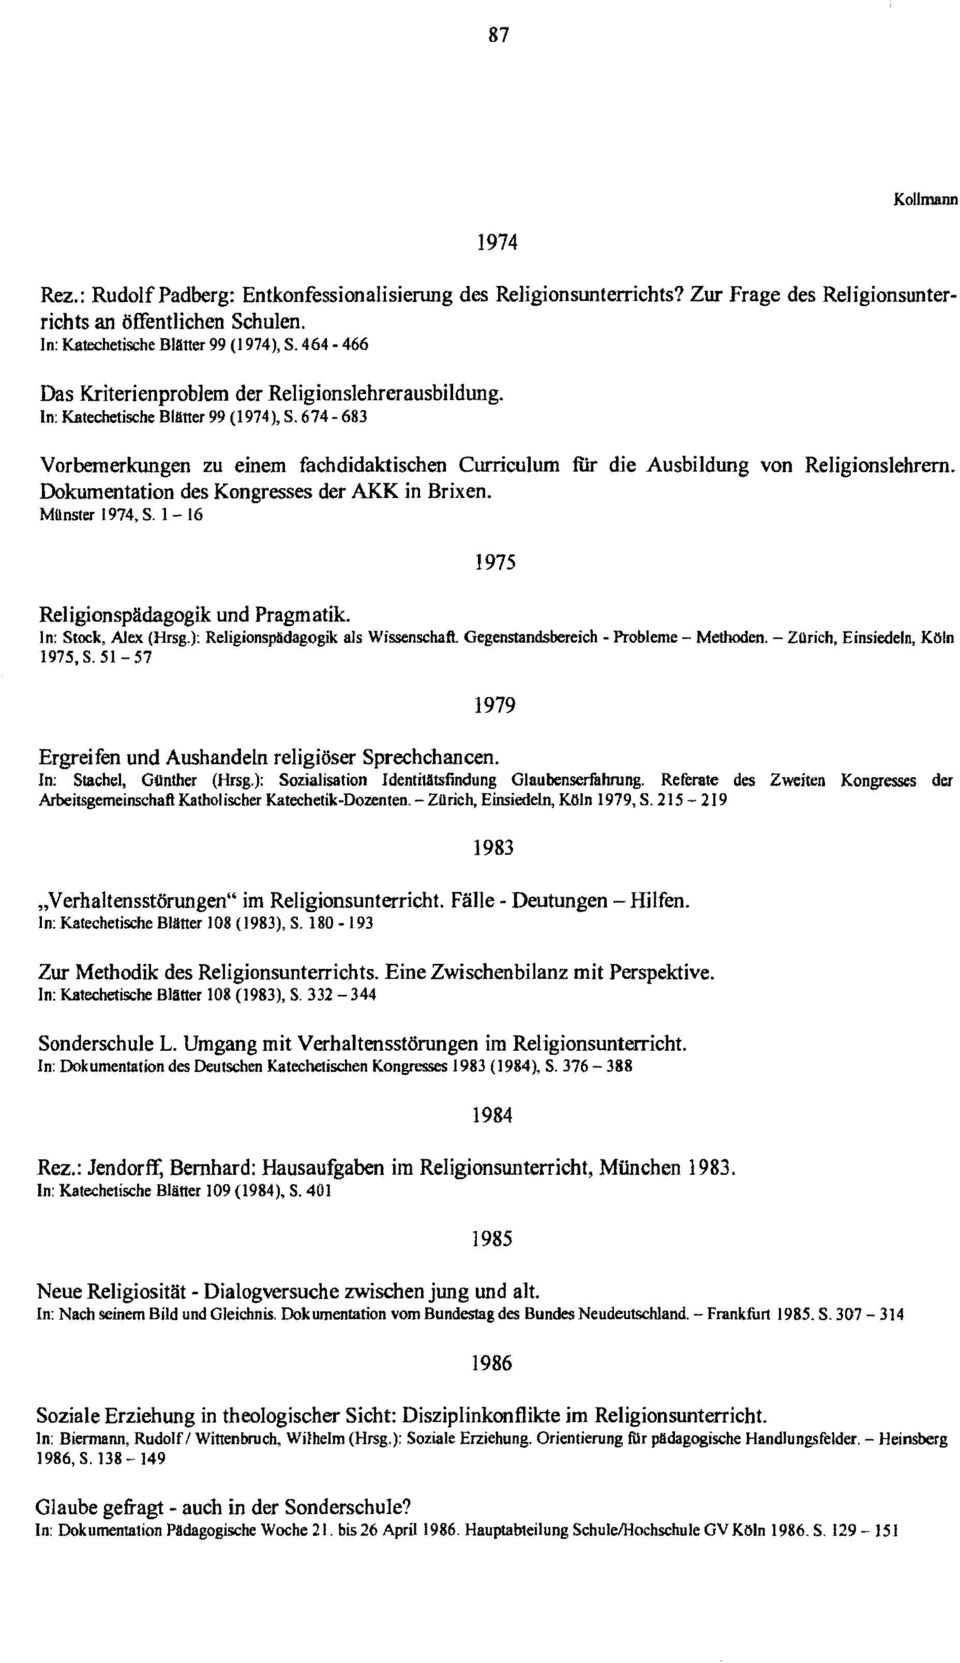 674-683 Vorbemerkungen zu einem fachdidaktischen Curriculum fiir die Ausbildung von Religionslehrern. Dokumentation des Kongresses der AKK in Brixen. Münster 1974, S.